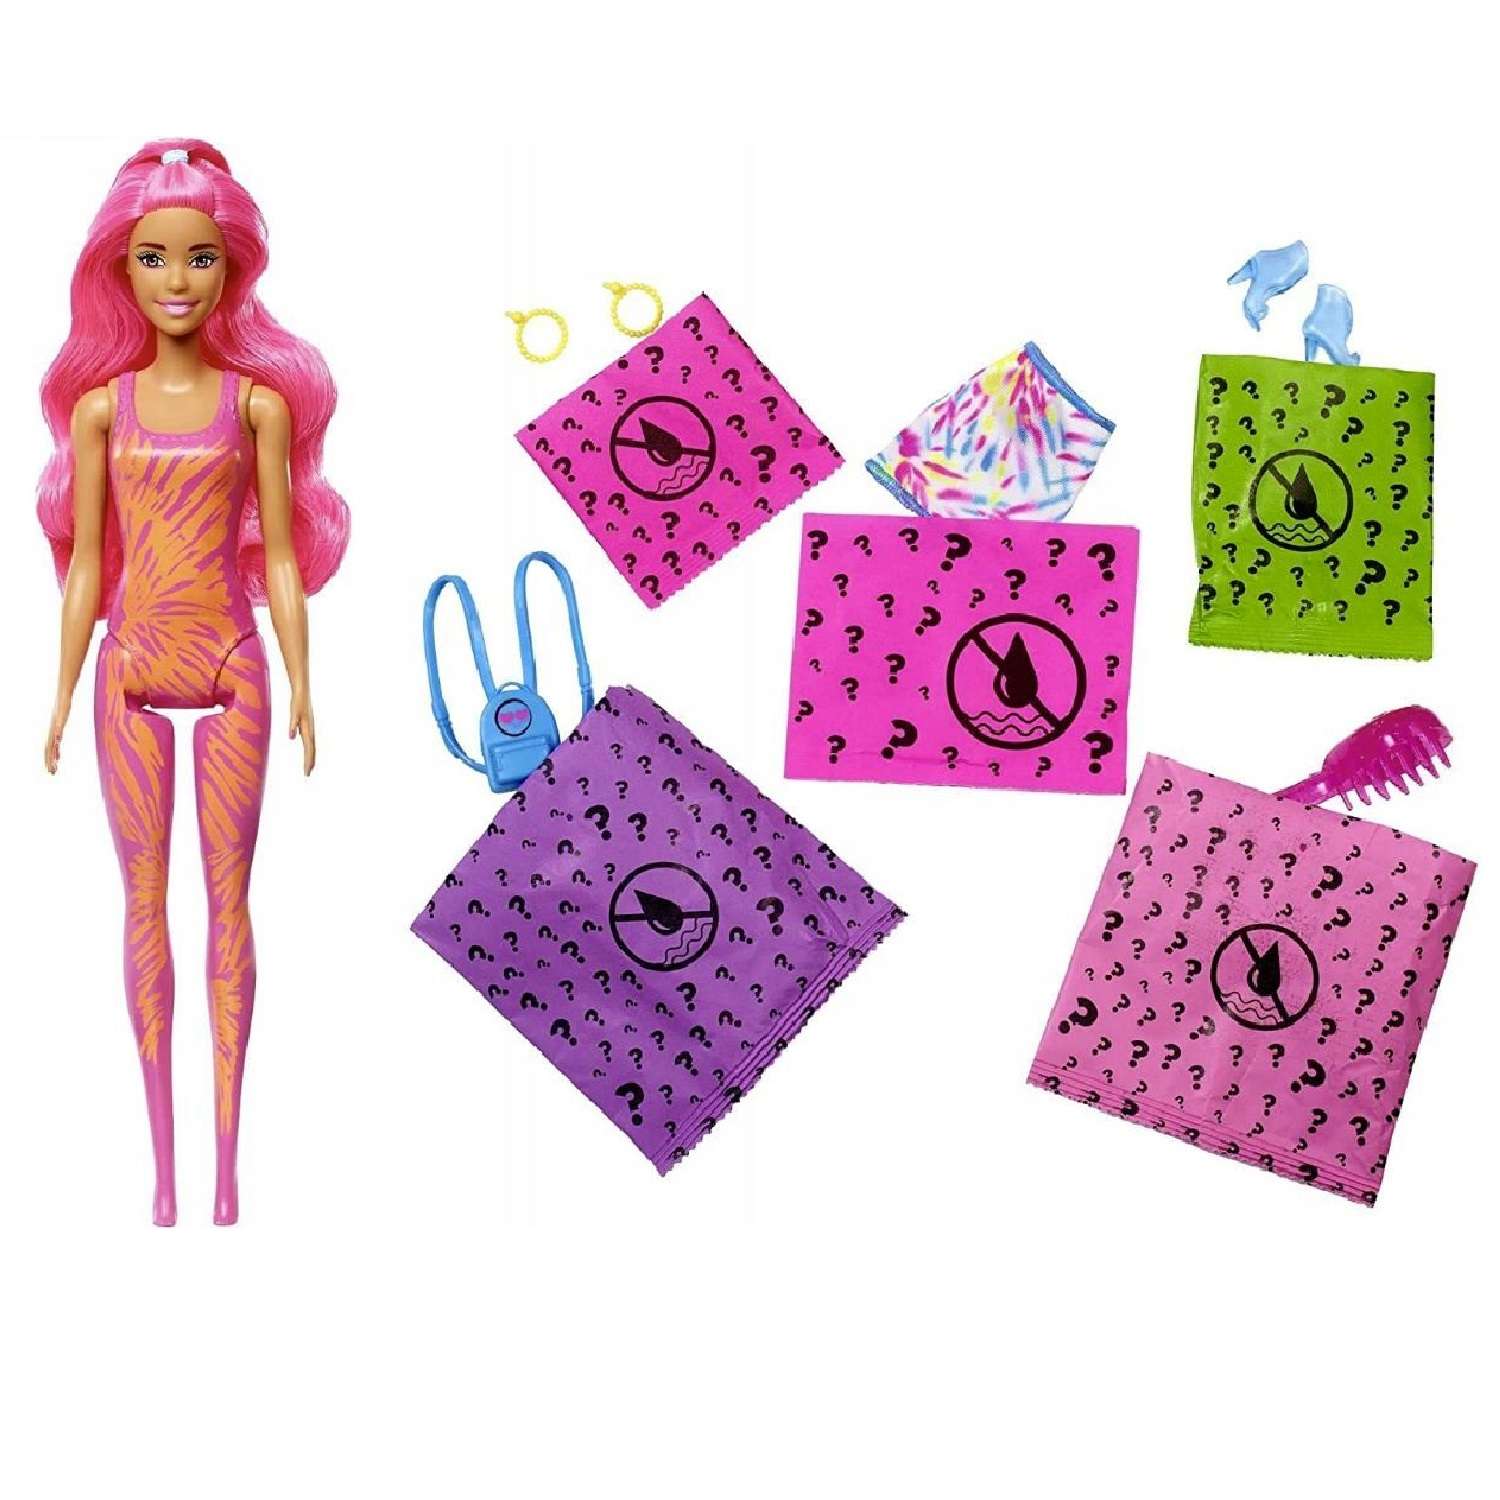 Кукла Barbie меняющая цвет в непрозрачной упаковке (Сюрприз) HDN72 HDN72 - фото 3